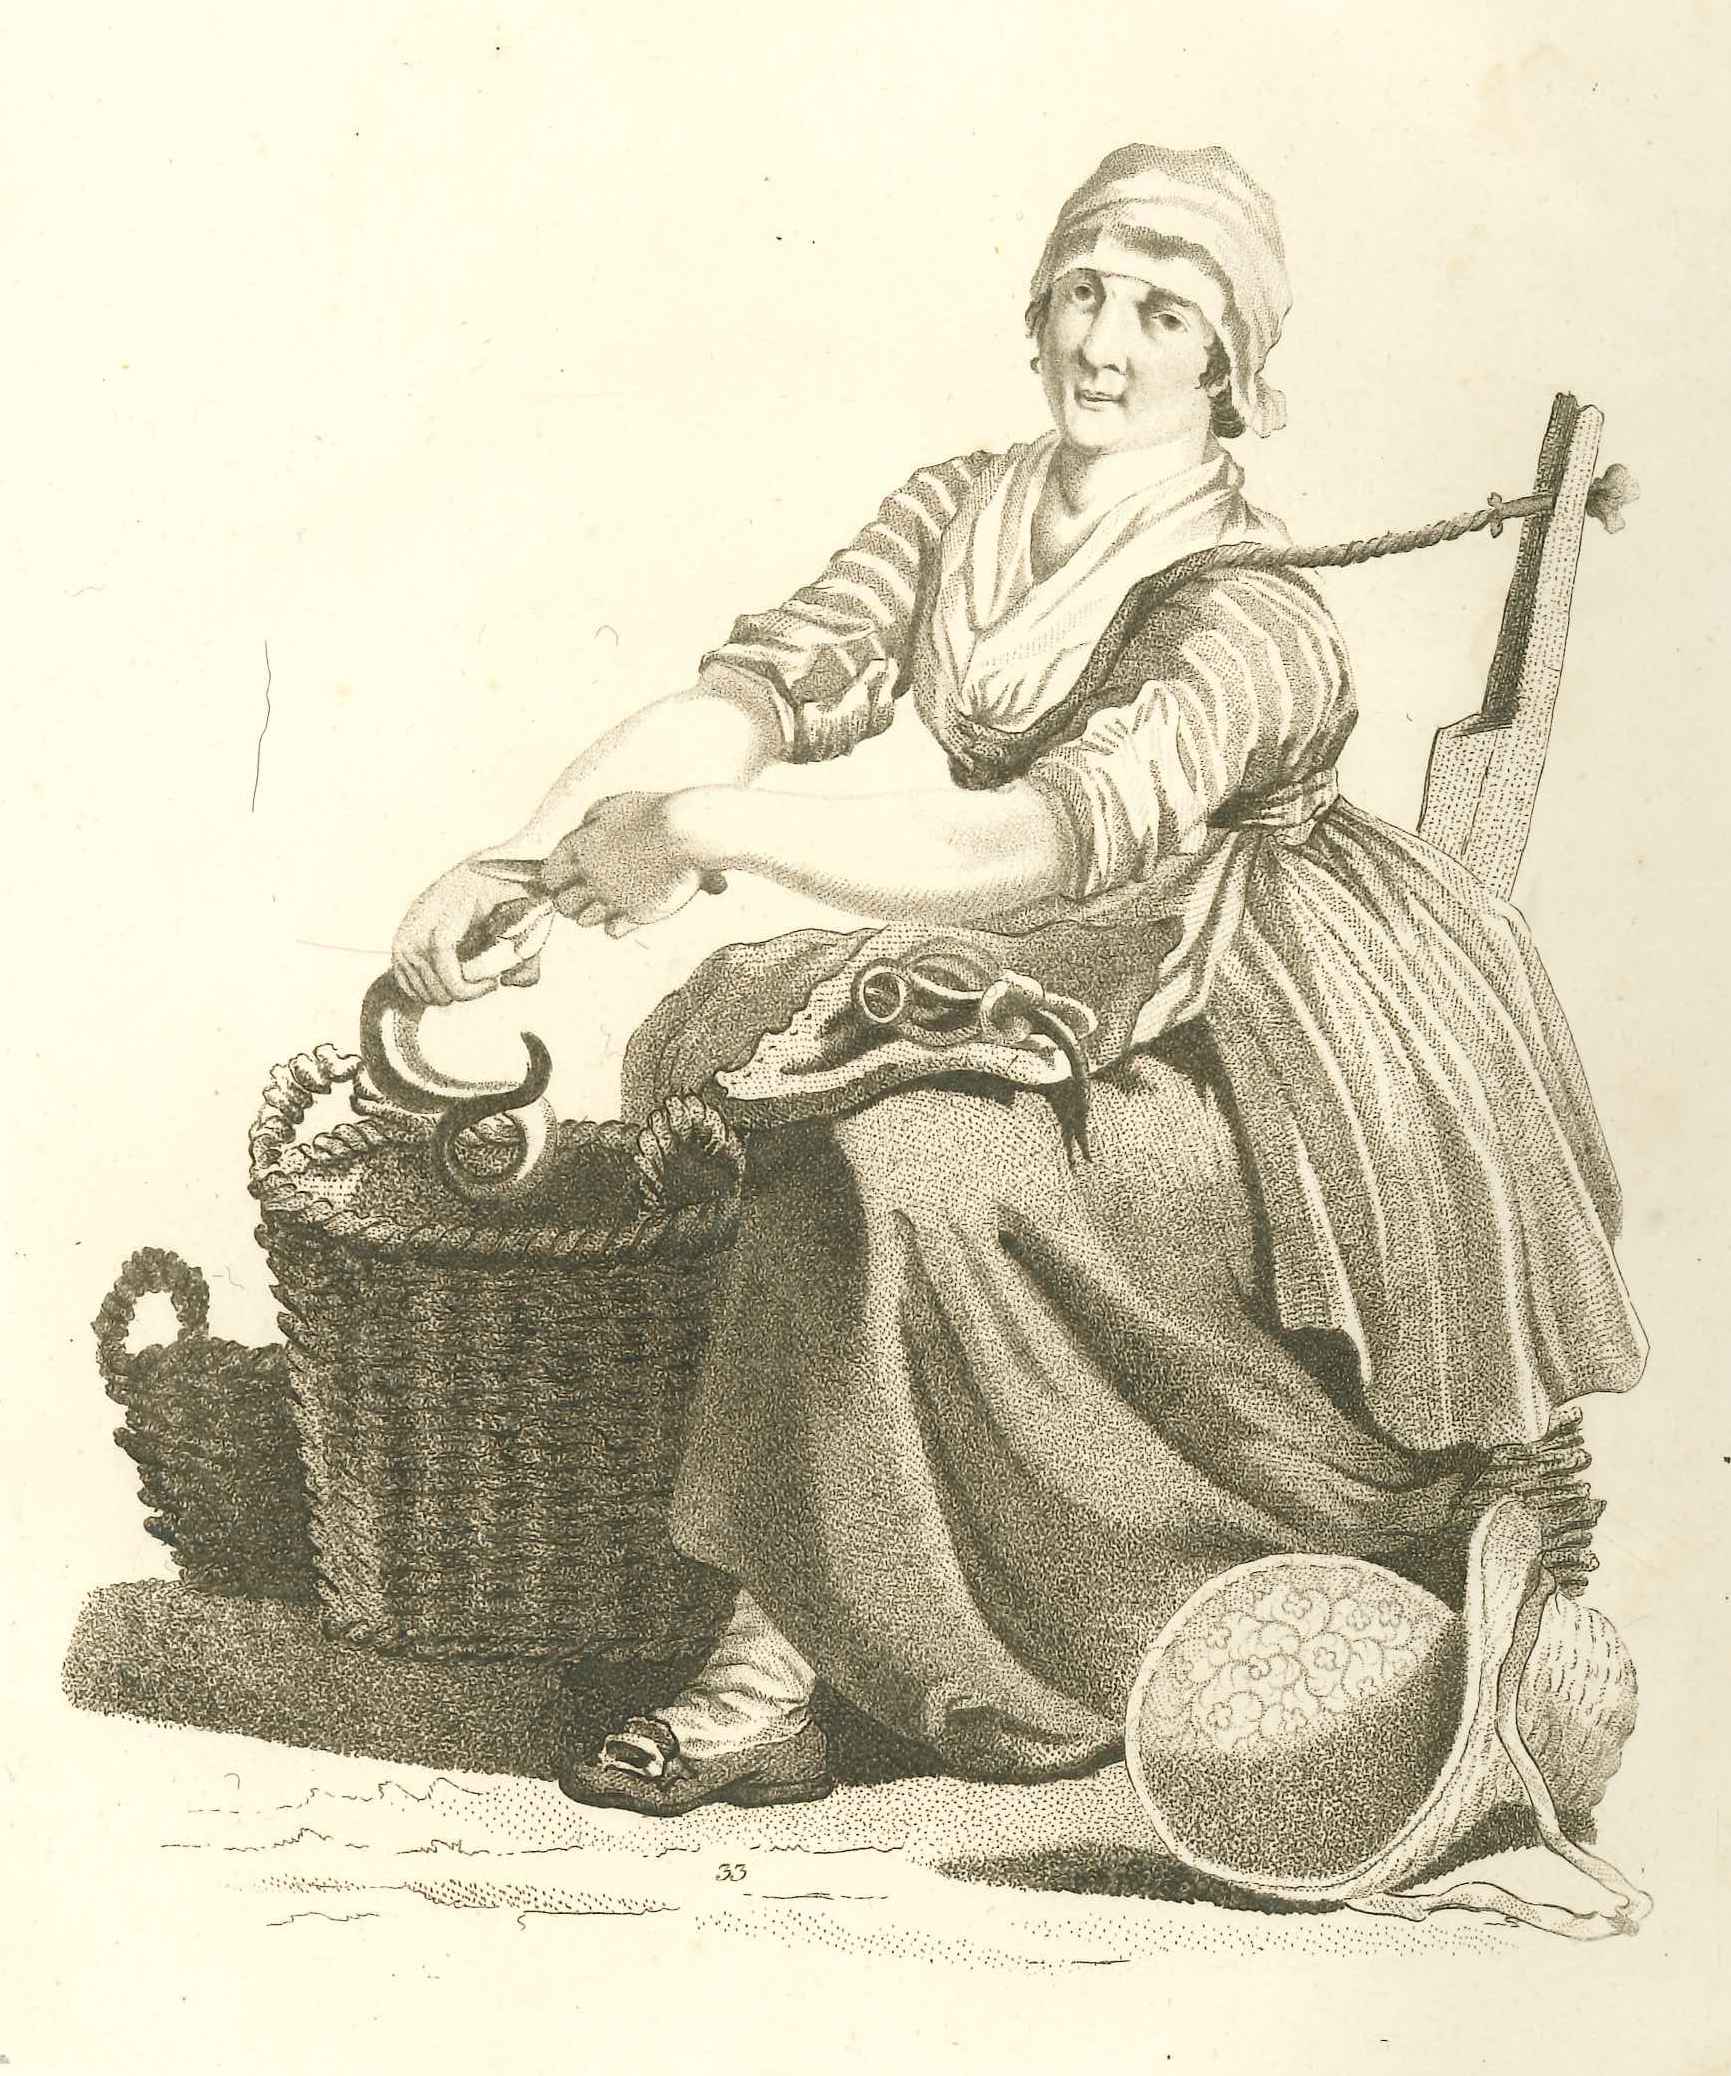 Visleurster maakt paling schoon, ca. 1800.